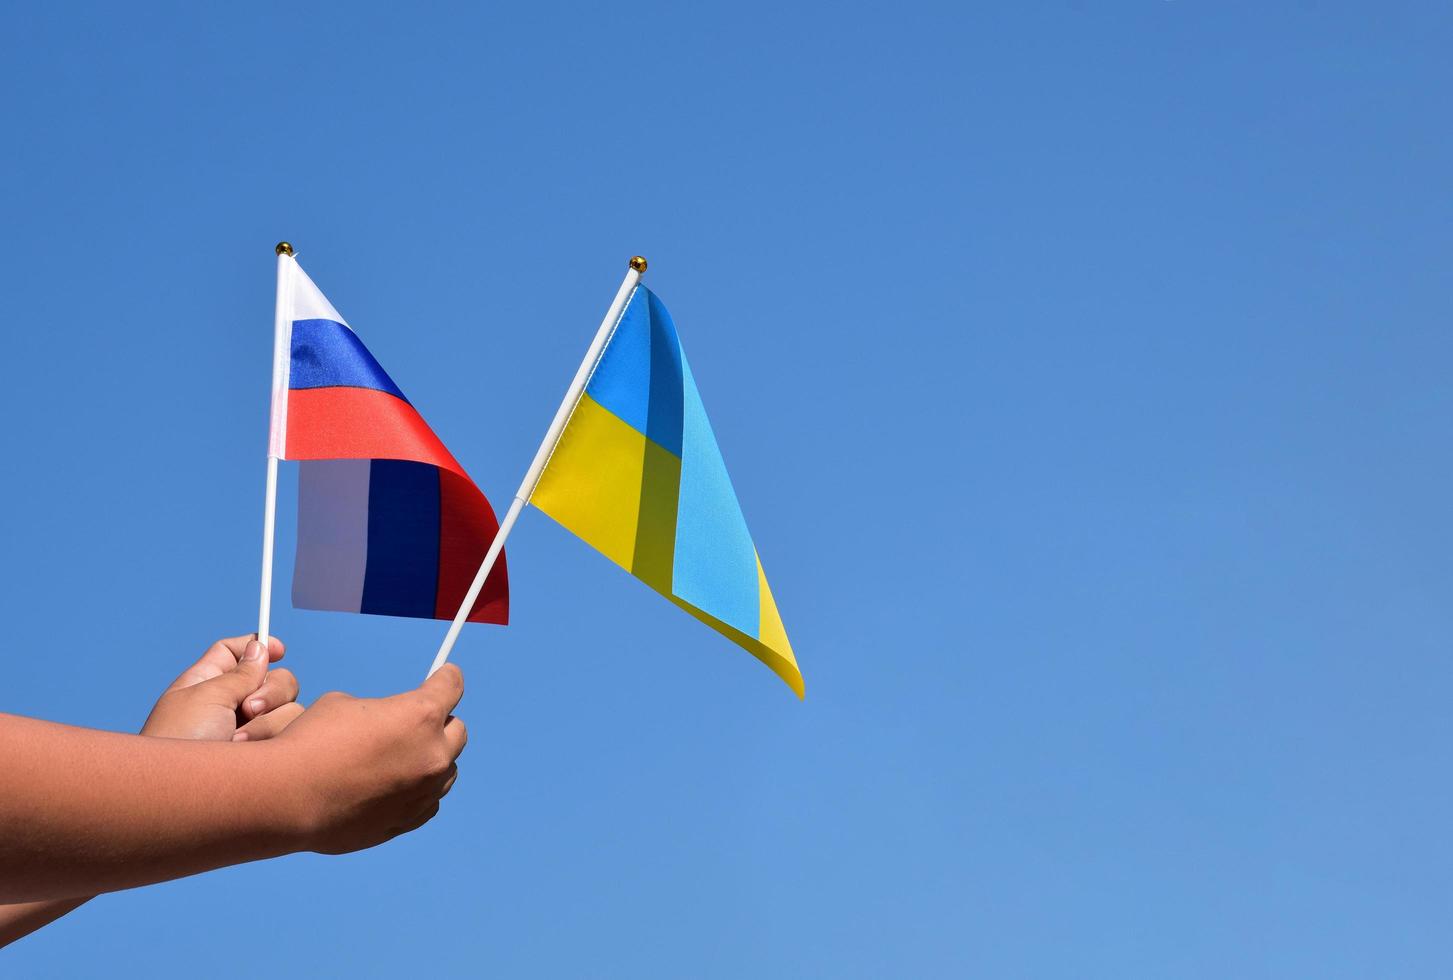 bandera nacional rusa y bandera nacional ucraniana cogidas de la mano contra el fondo azul, enfoque suave y selectivo. foto